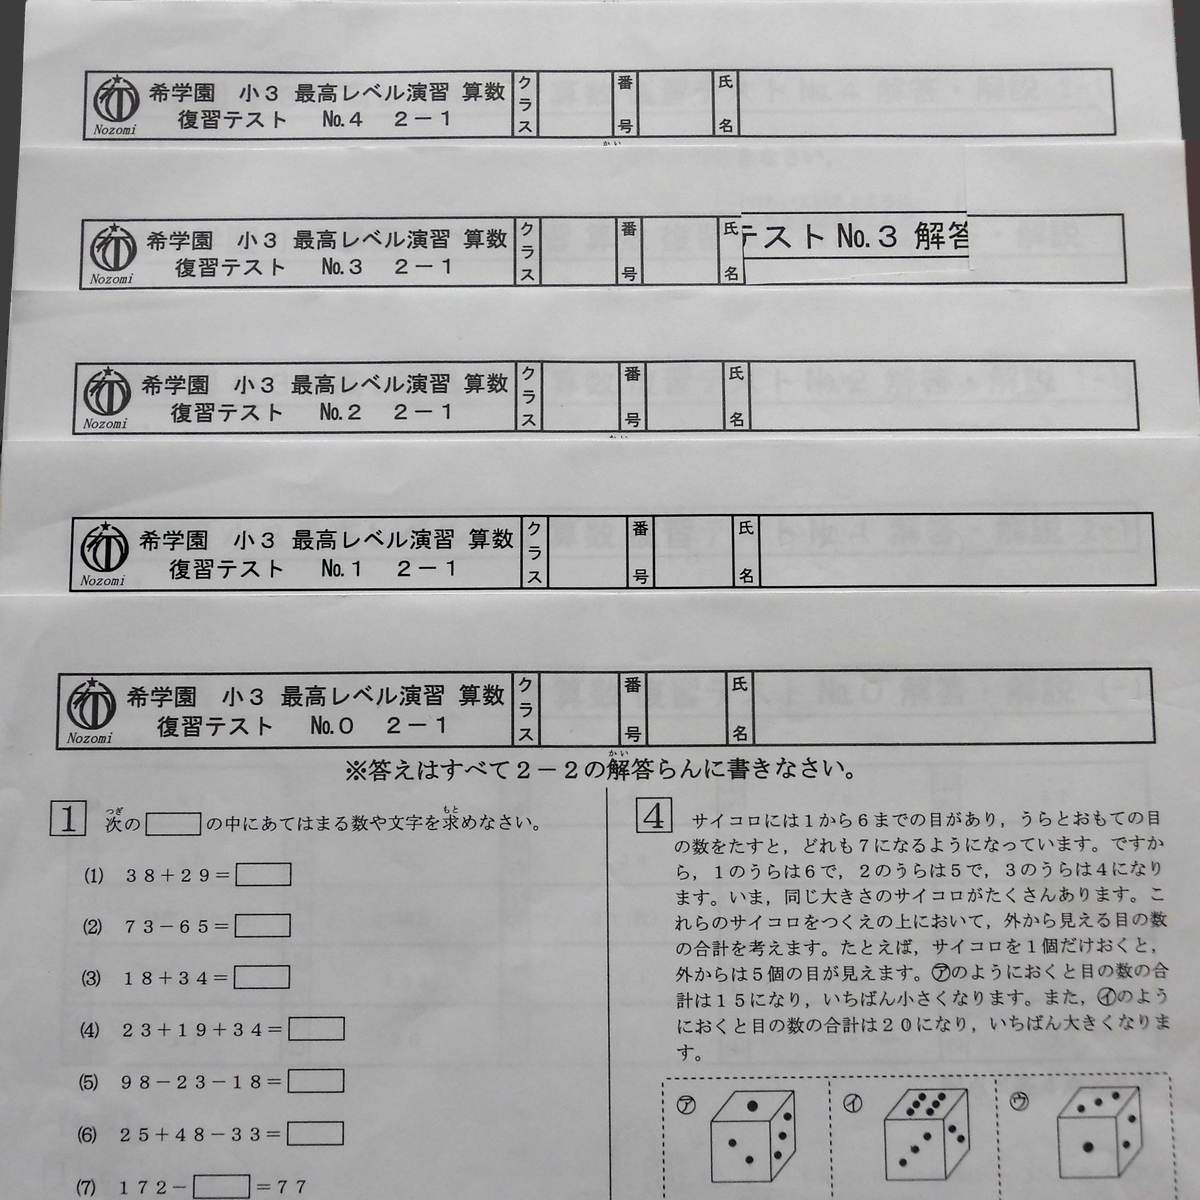 希学園 小3 最高レベル演習 算数 復習テスト No 0～No 43 1年間分 2019